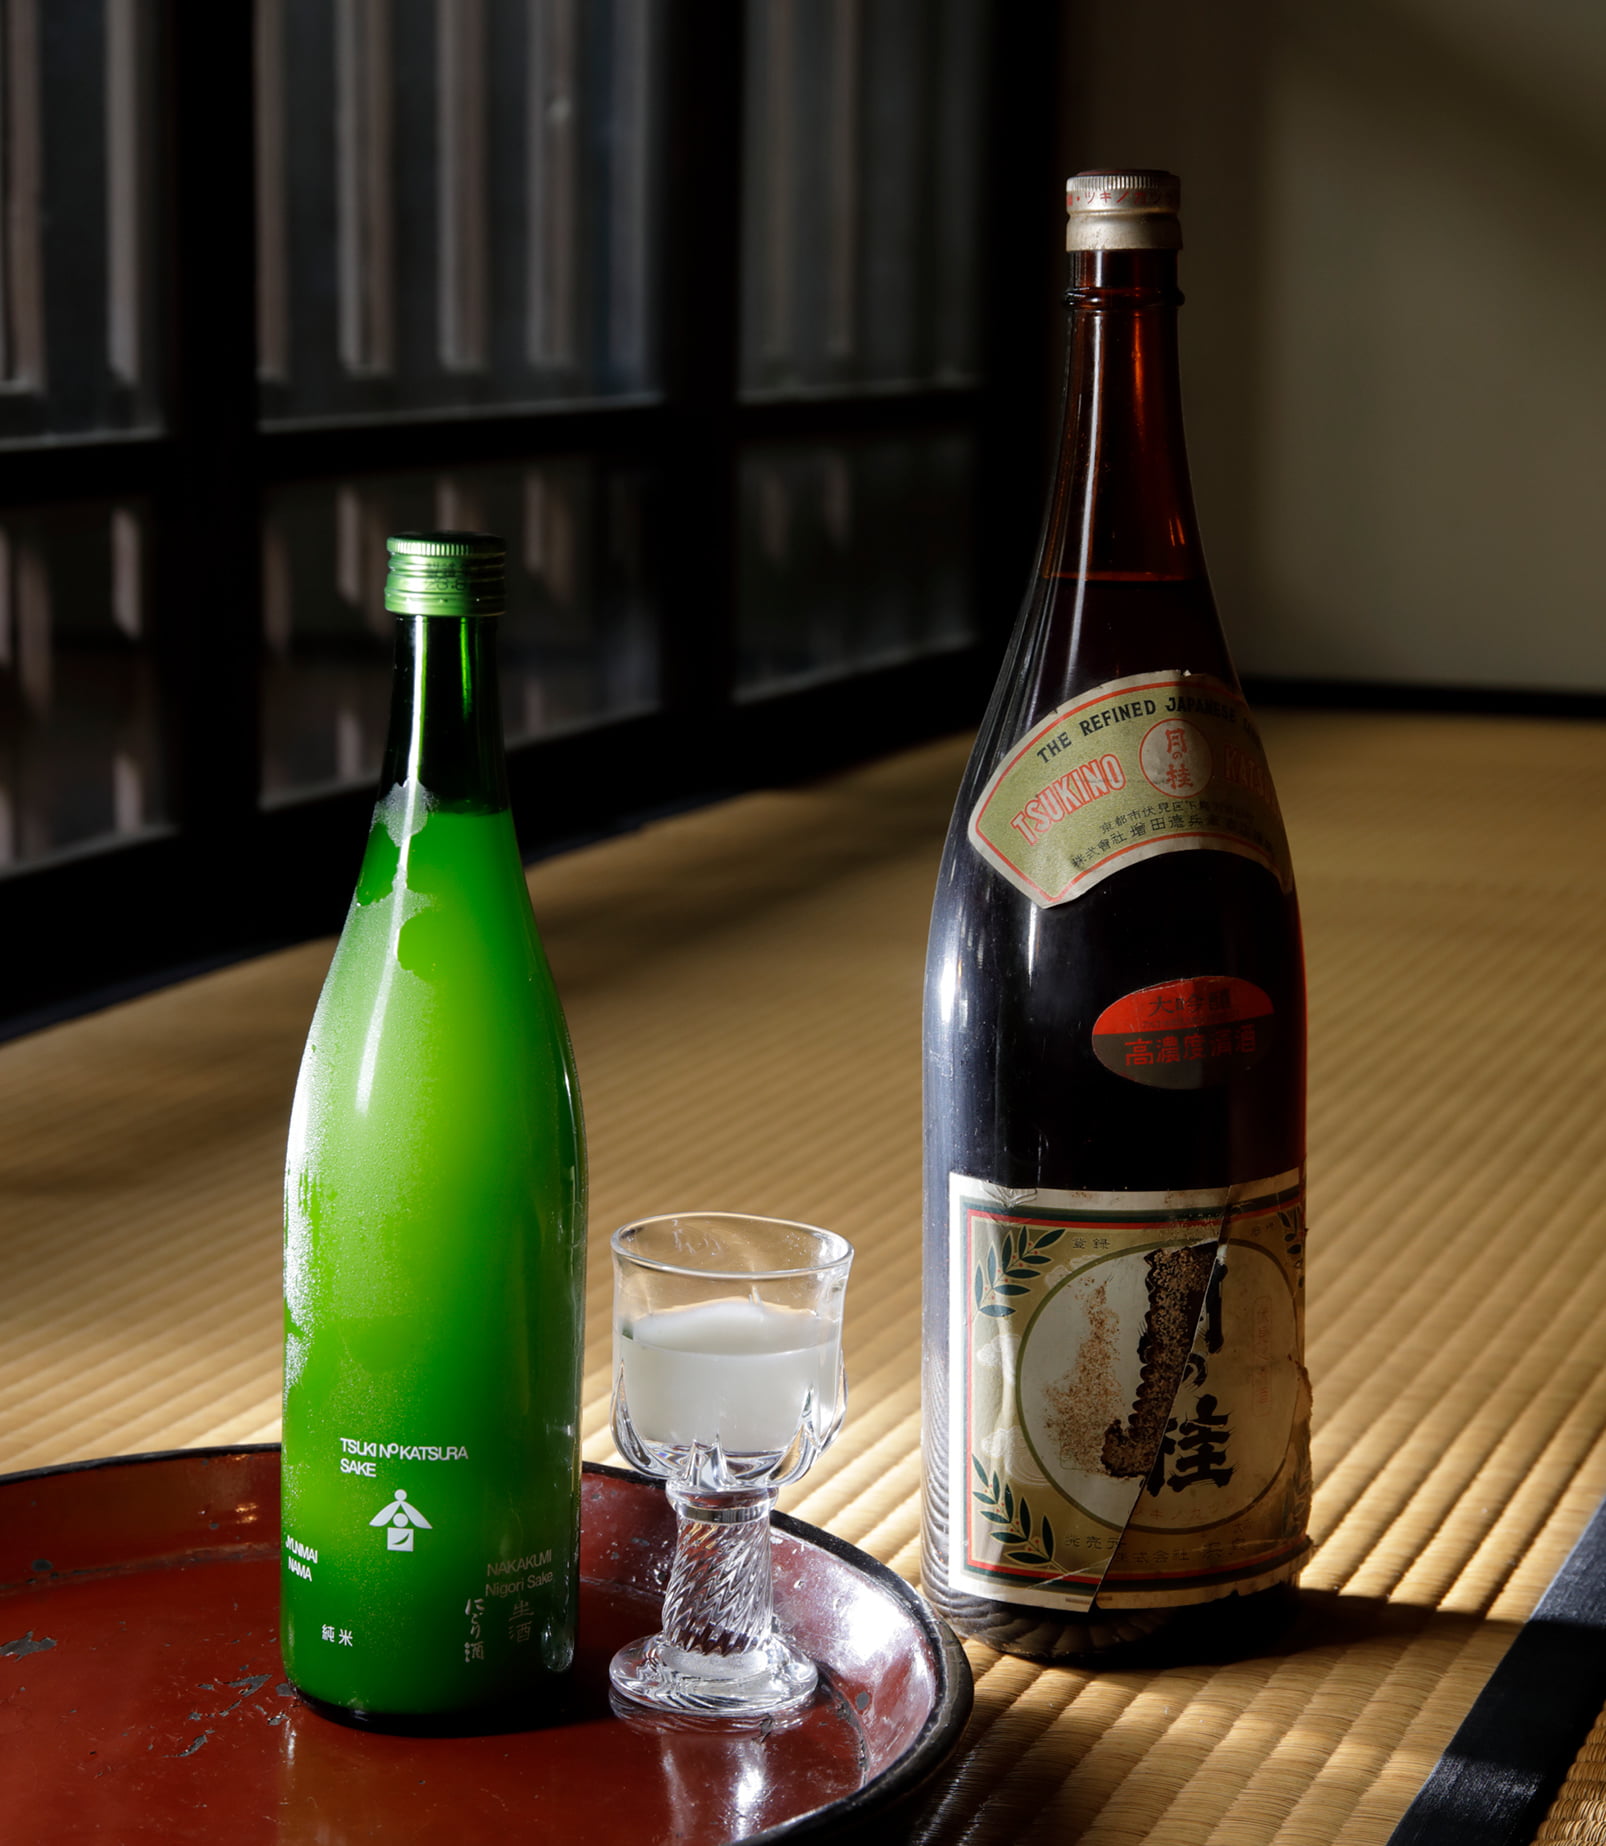 月の桂の代名詞として親しまれている「純米にごり酒」。右の一升瓶は1964年の発売当時のもの。シュワシュワっとした泡が心地よいスパークリングにごり酒で、立ち上る気泡が目で楽しめるよう醇一社長がラベルデザインを一新した。